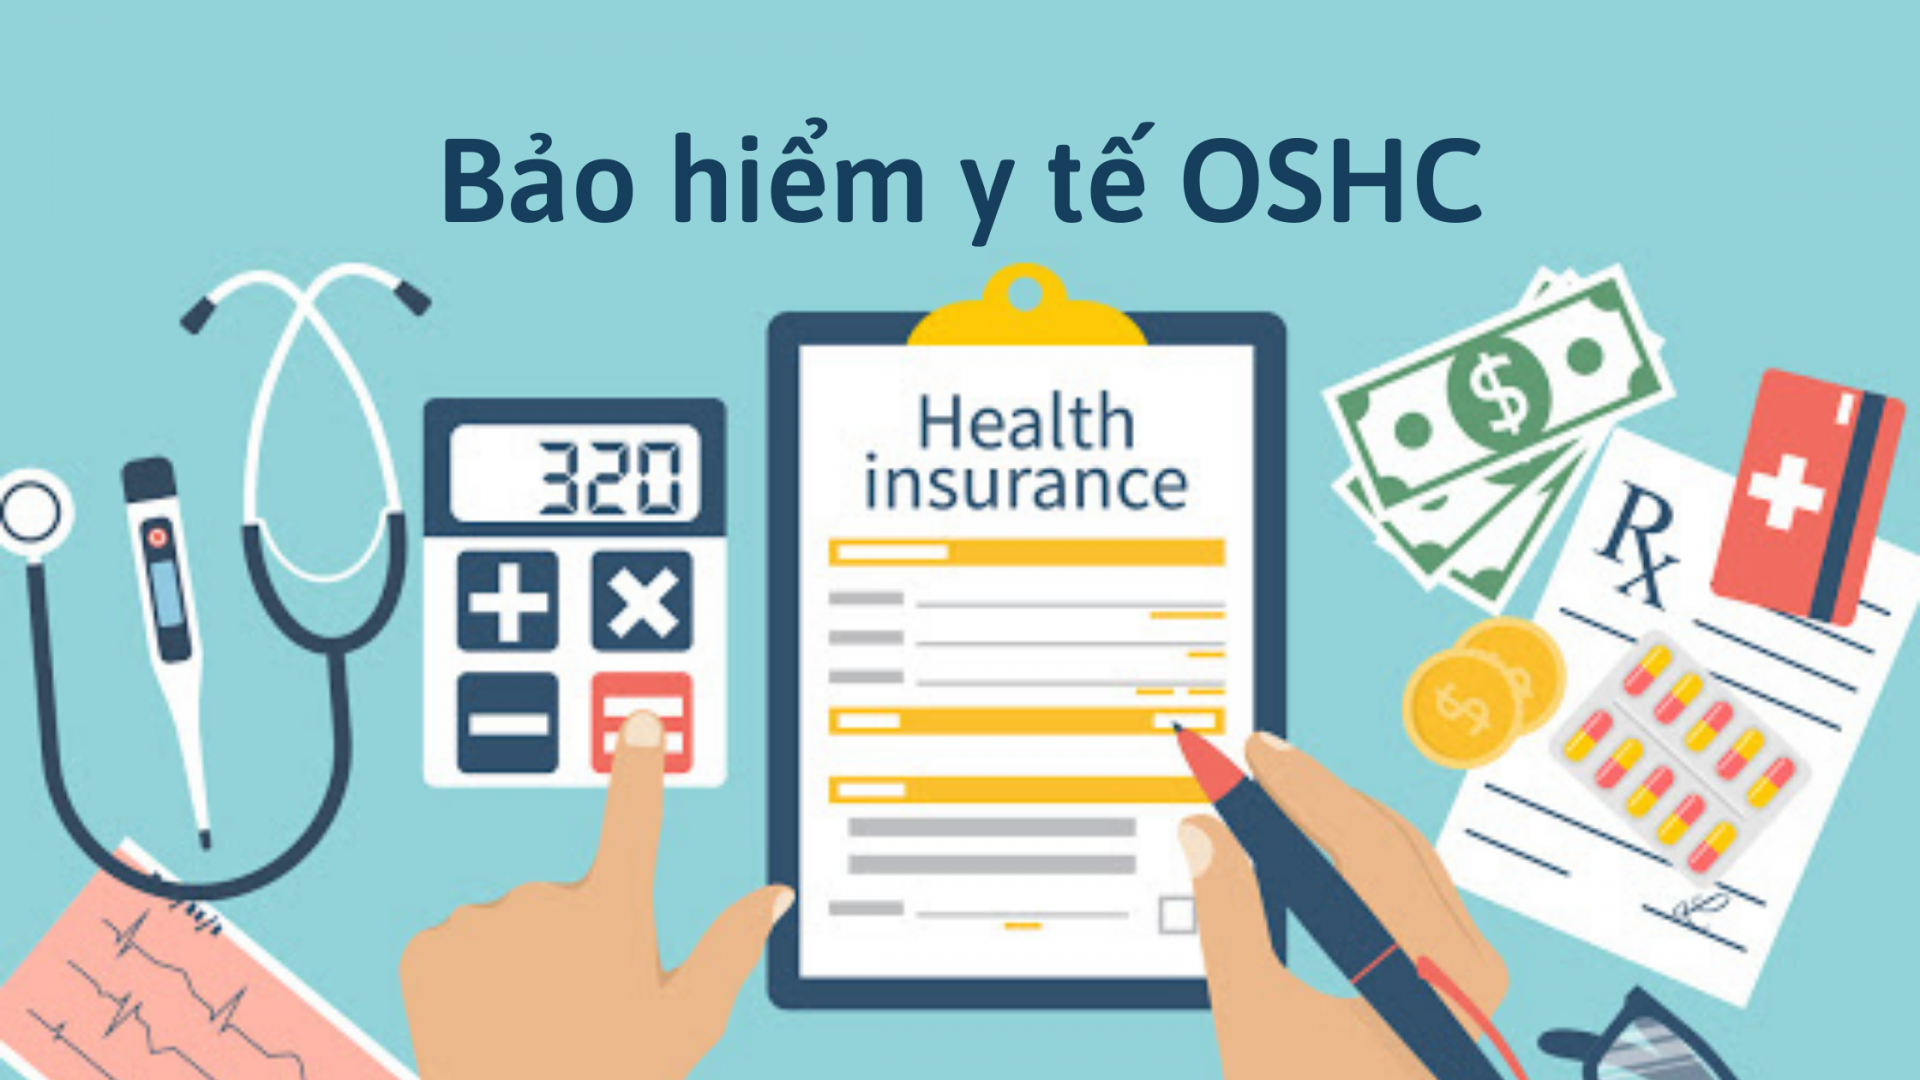 Bảo hiểm y tế OSHC